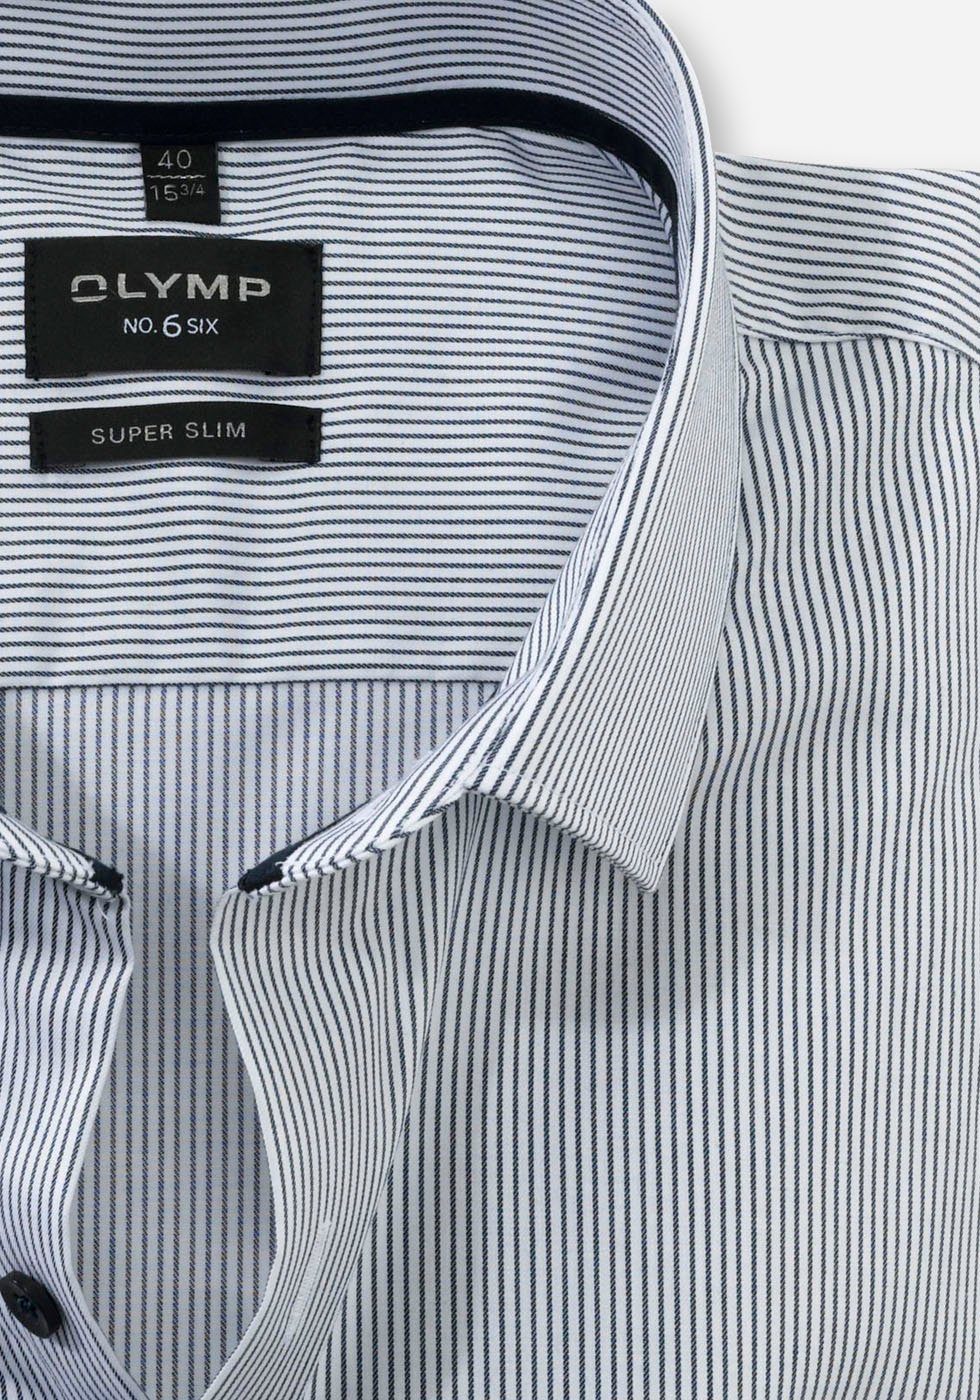 OLYMP Businesshemd No. Six super No 6-Serie aus slim der